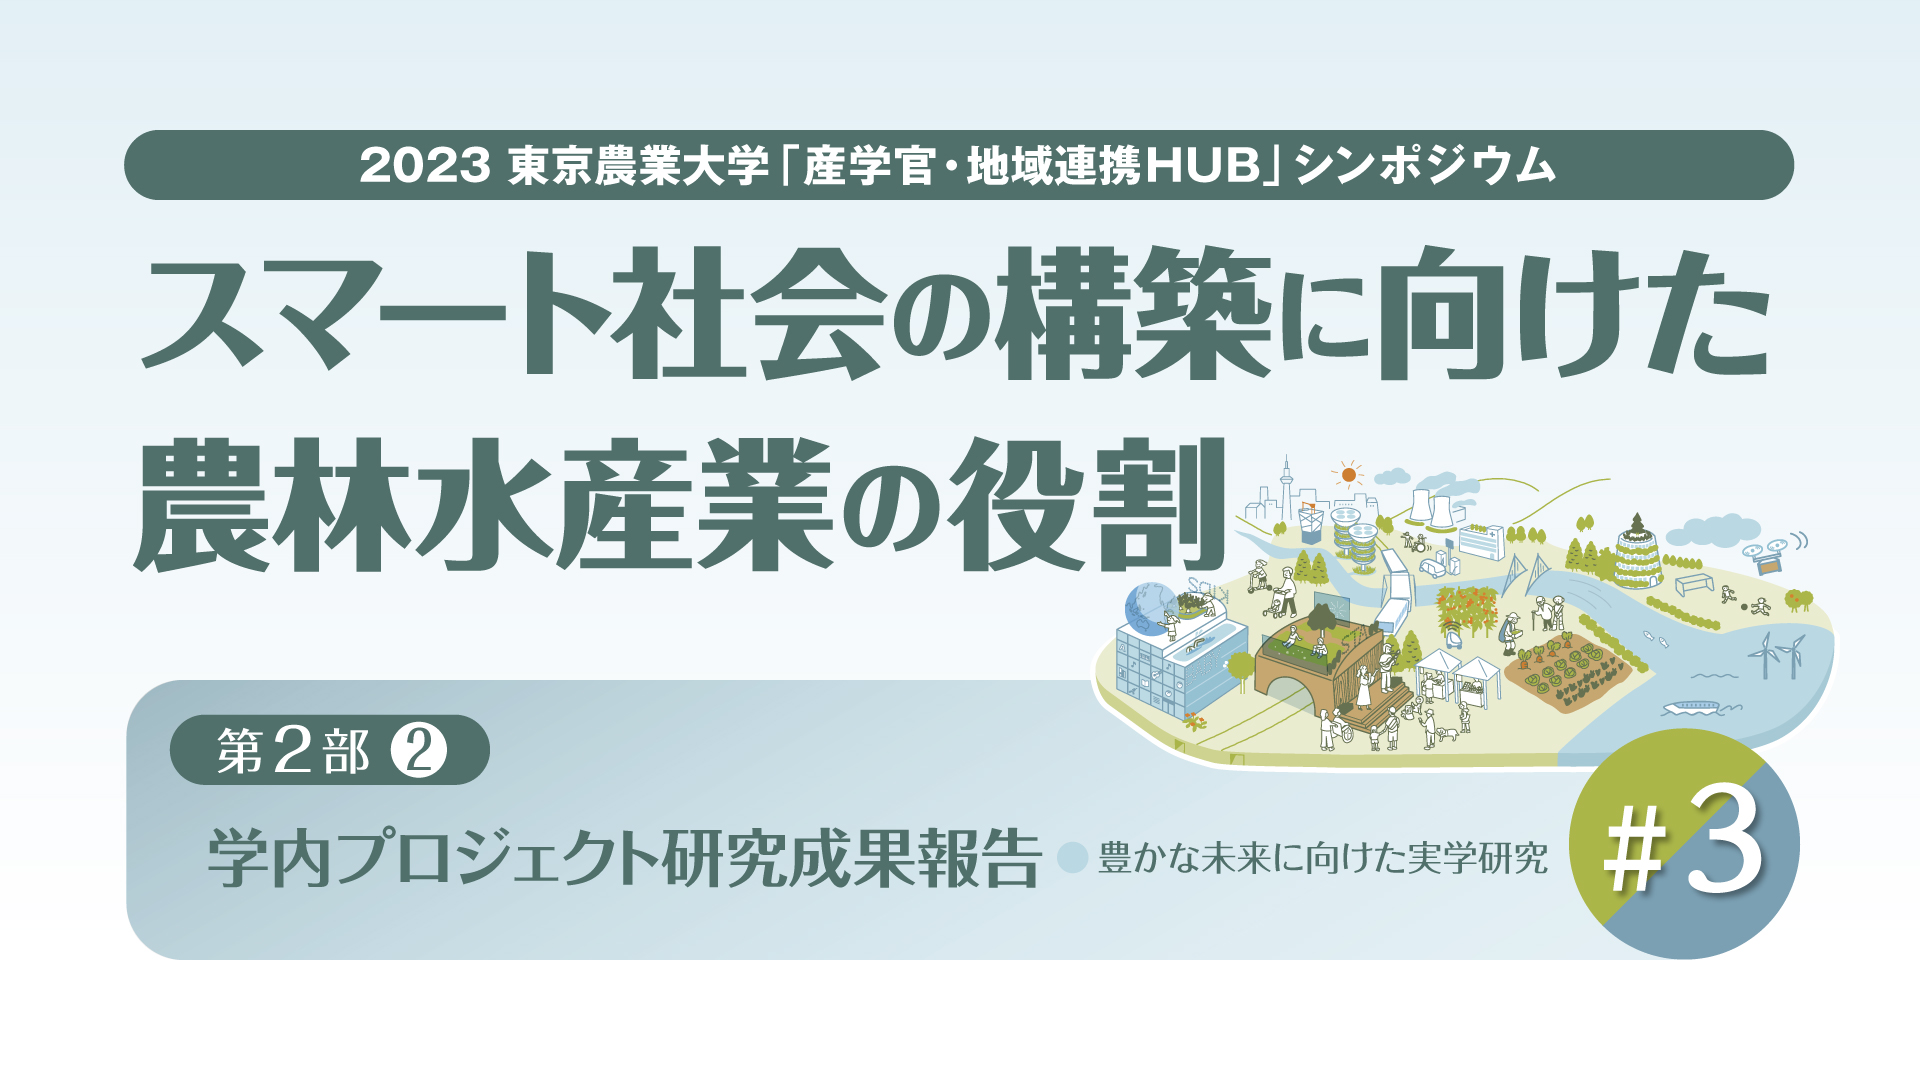 【#3 東京農業大学「産学官・地域連携HUB」シンポジウム / 2023年度 第2回】「スマート社会の構築に向けた農林水産業の役割」【第2部 / 学内プロジェクト研究成果報告】